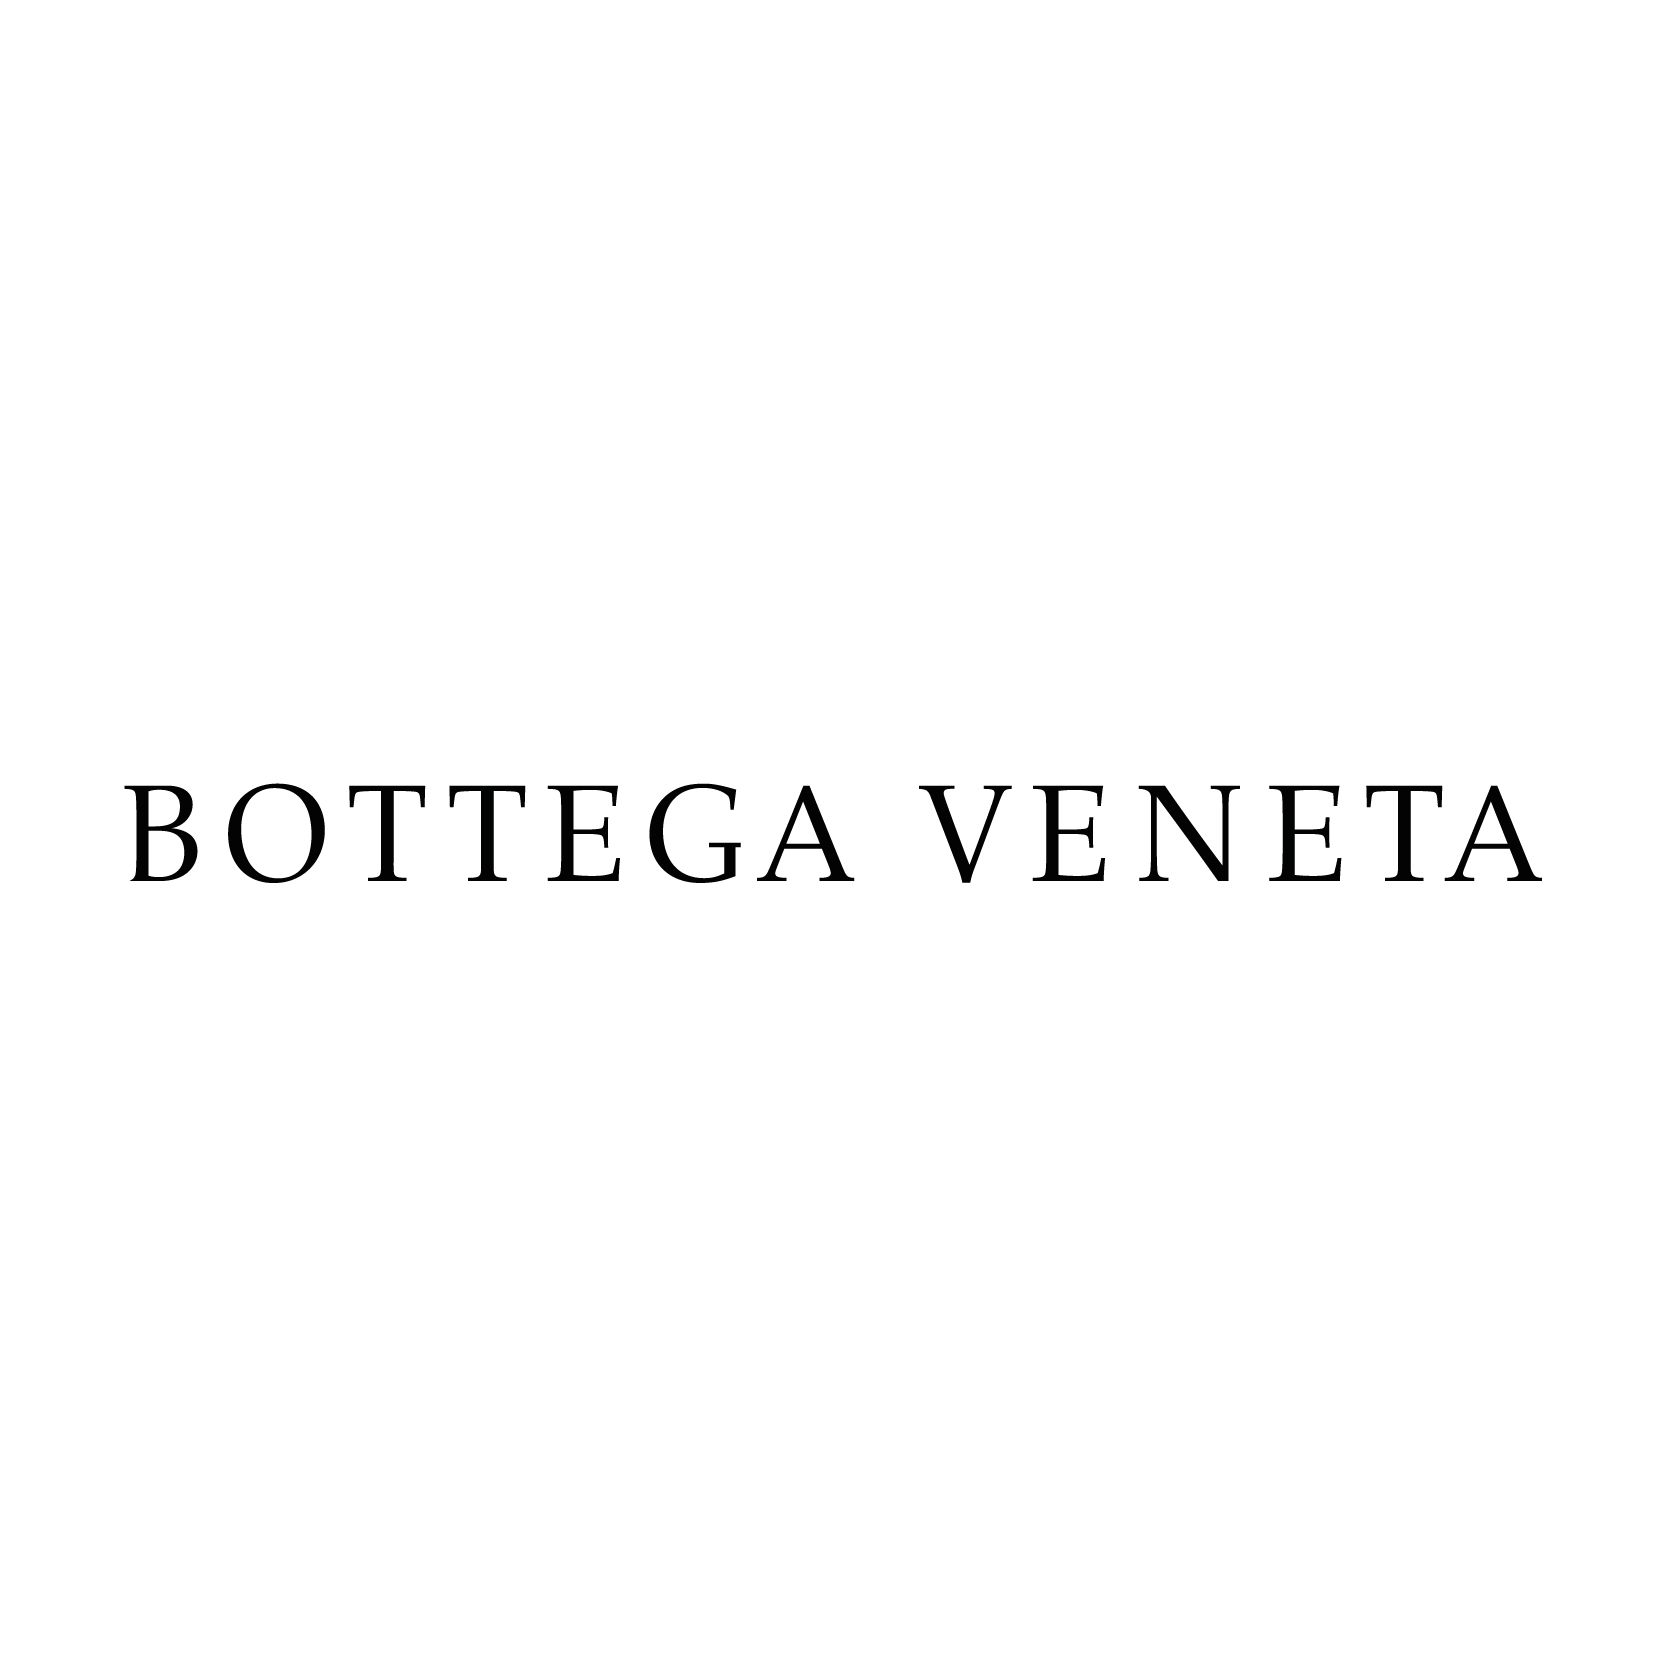 Bottega Veneta Home Logo - Bottega Veneta logo. Made In Italy